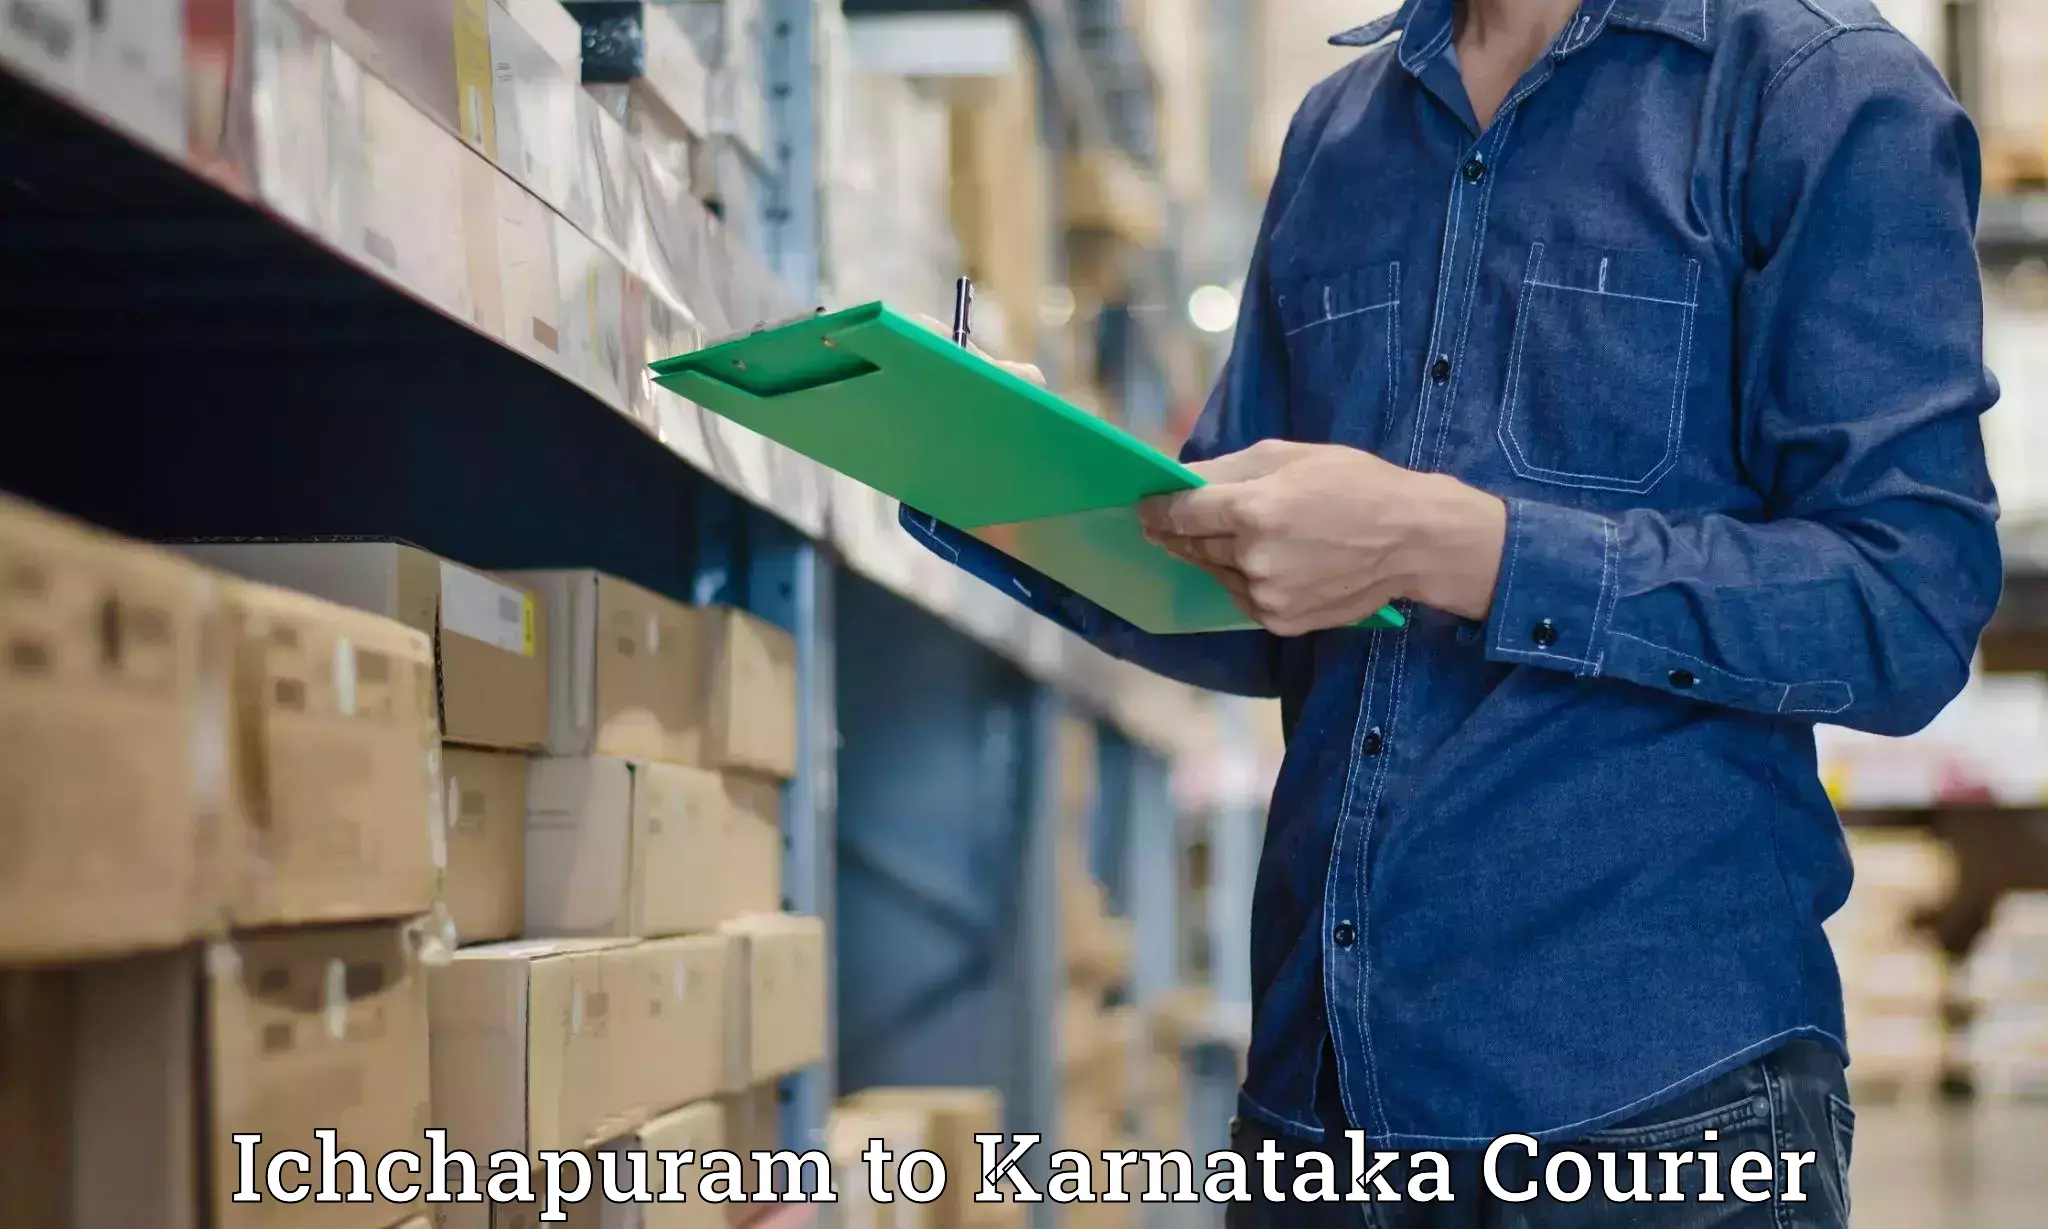 Courier service efficiency in Ichchapuram to Kotturu